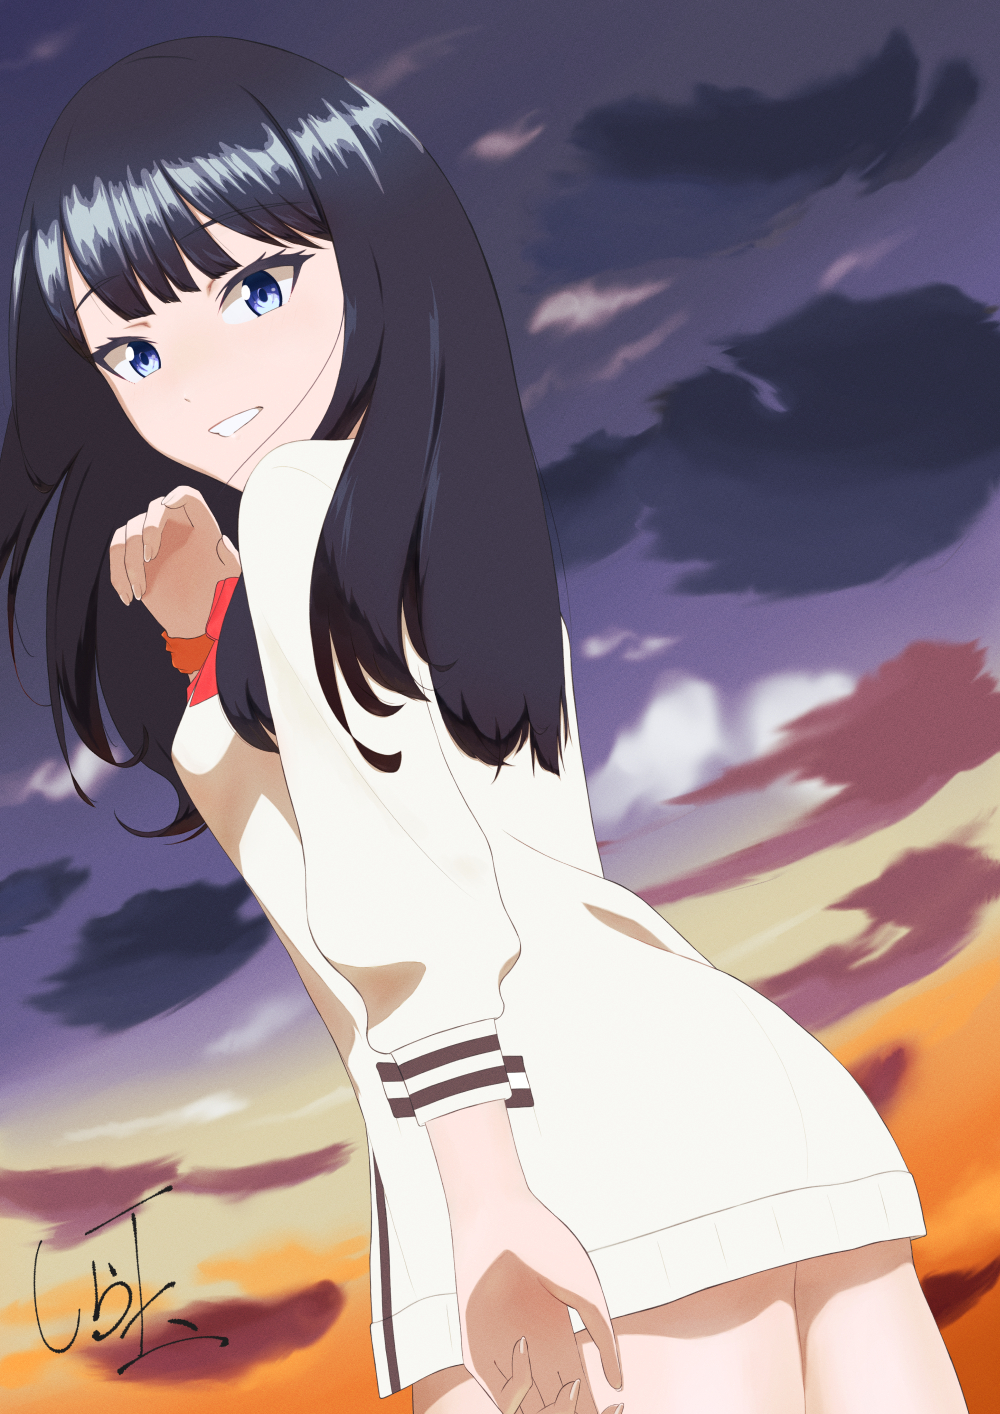 Anime 1000x1414 anime anime girls SSSS.GRIDMAN Takarada Rikka long hair black hair artwork digital art fan art